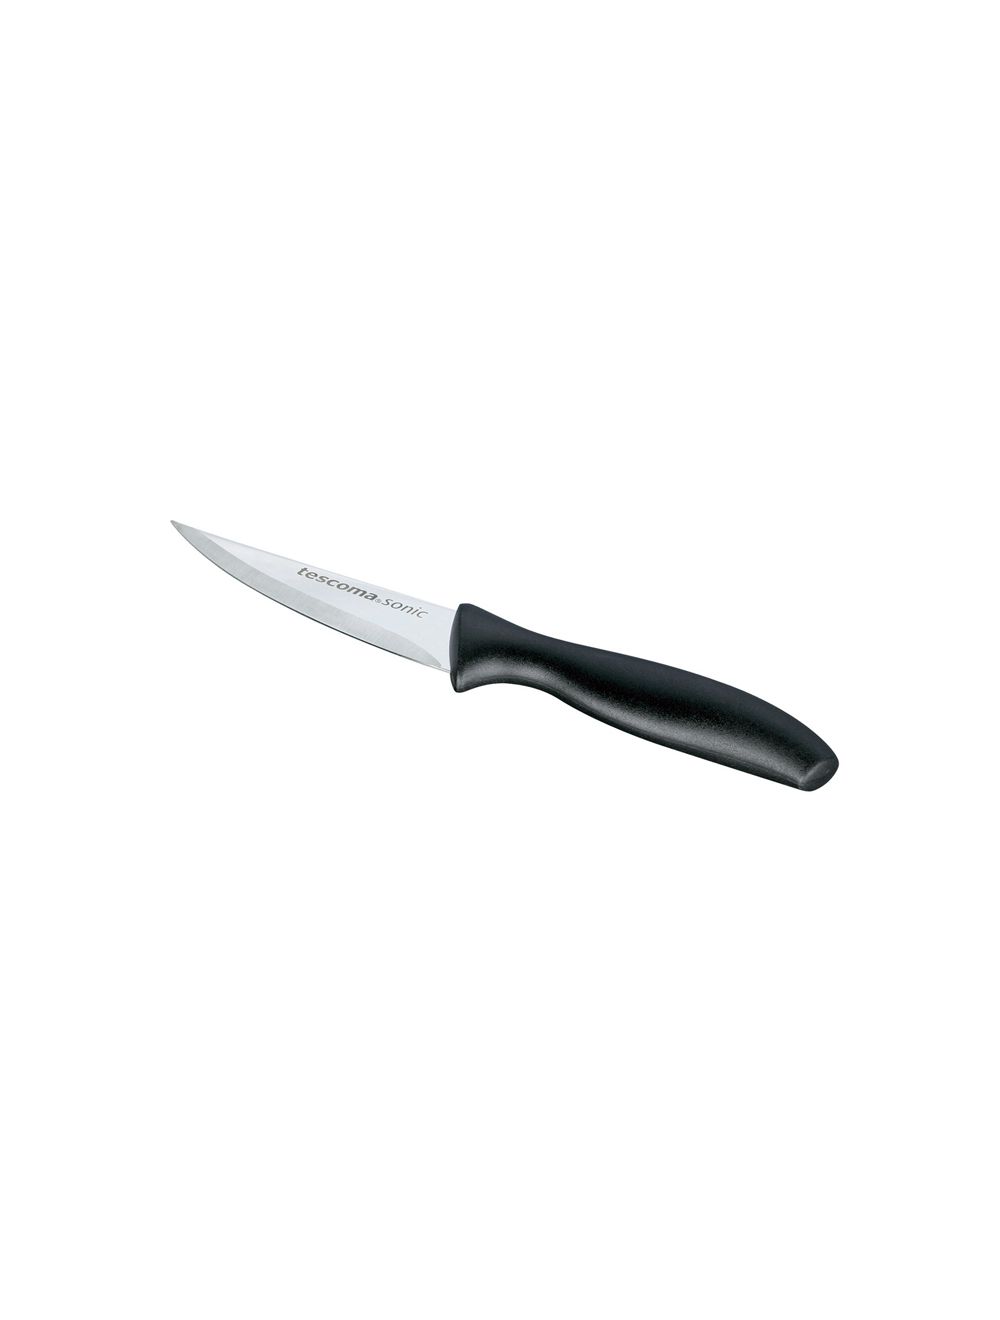 Tescoma Multi Purpose Knife 8cm